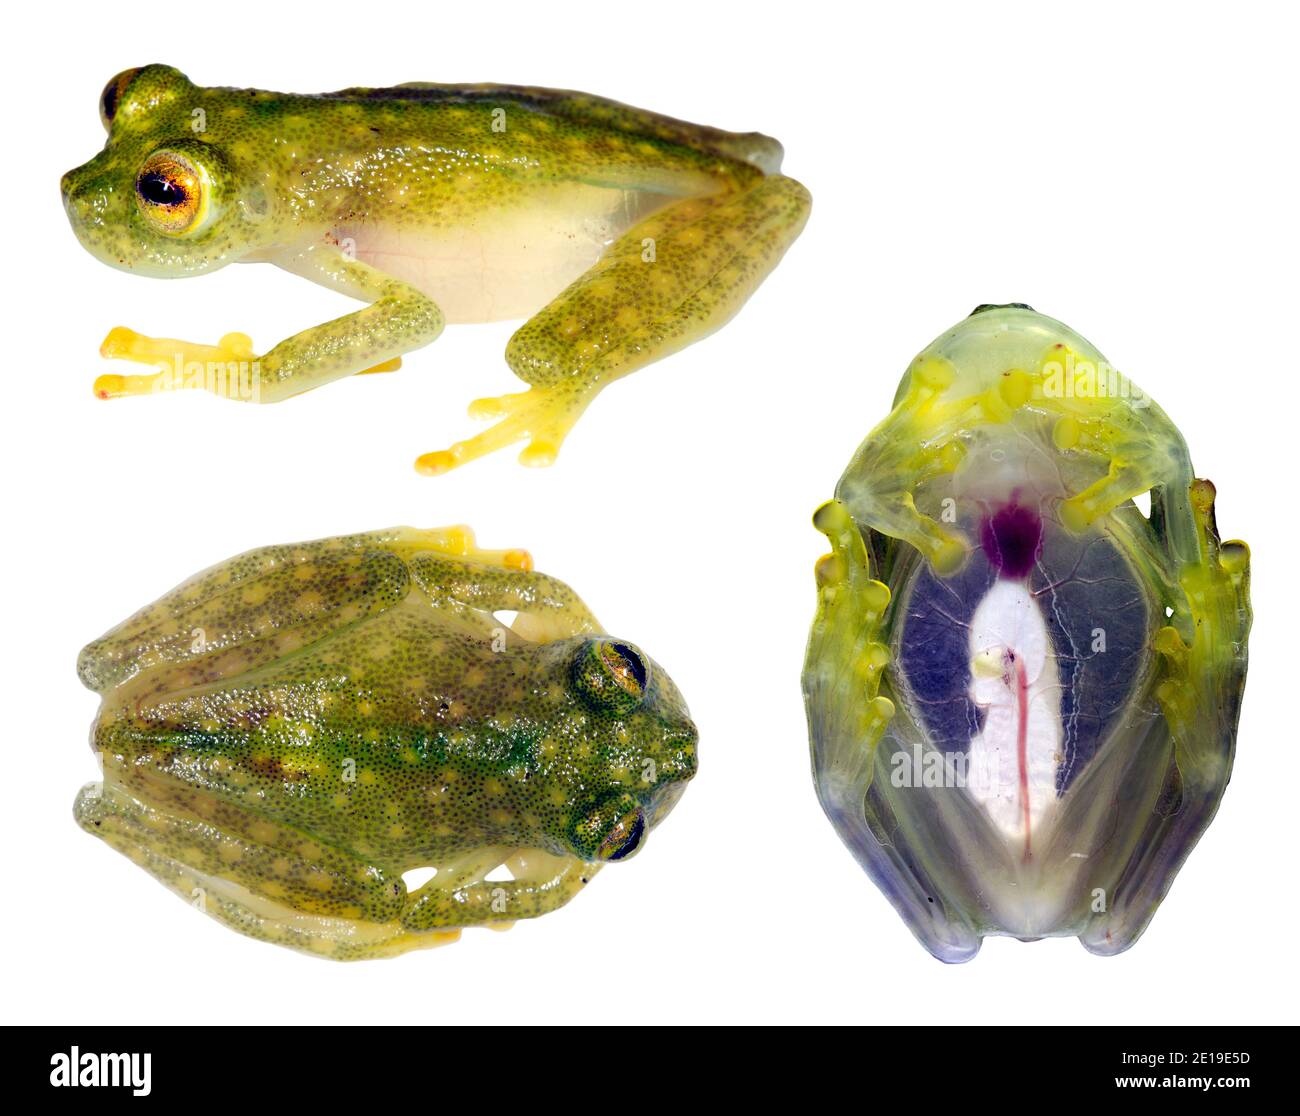 La grenouille de verre (Hyalinobatrachium sp.) pose en 3, en provenance de l'Équateur. Les parois des grenouilles en verre sont transparentes et leurs organes internes sont visibles Banque D'Images